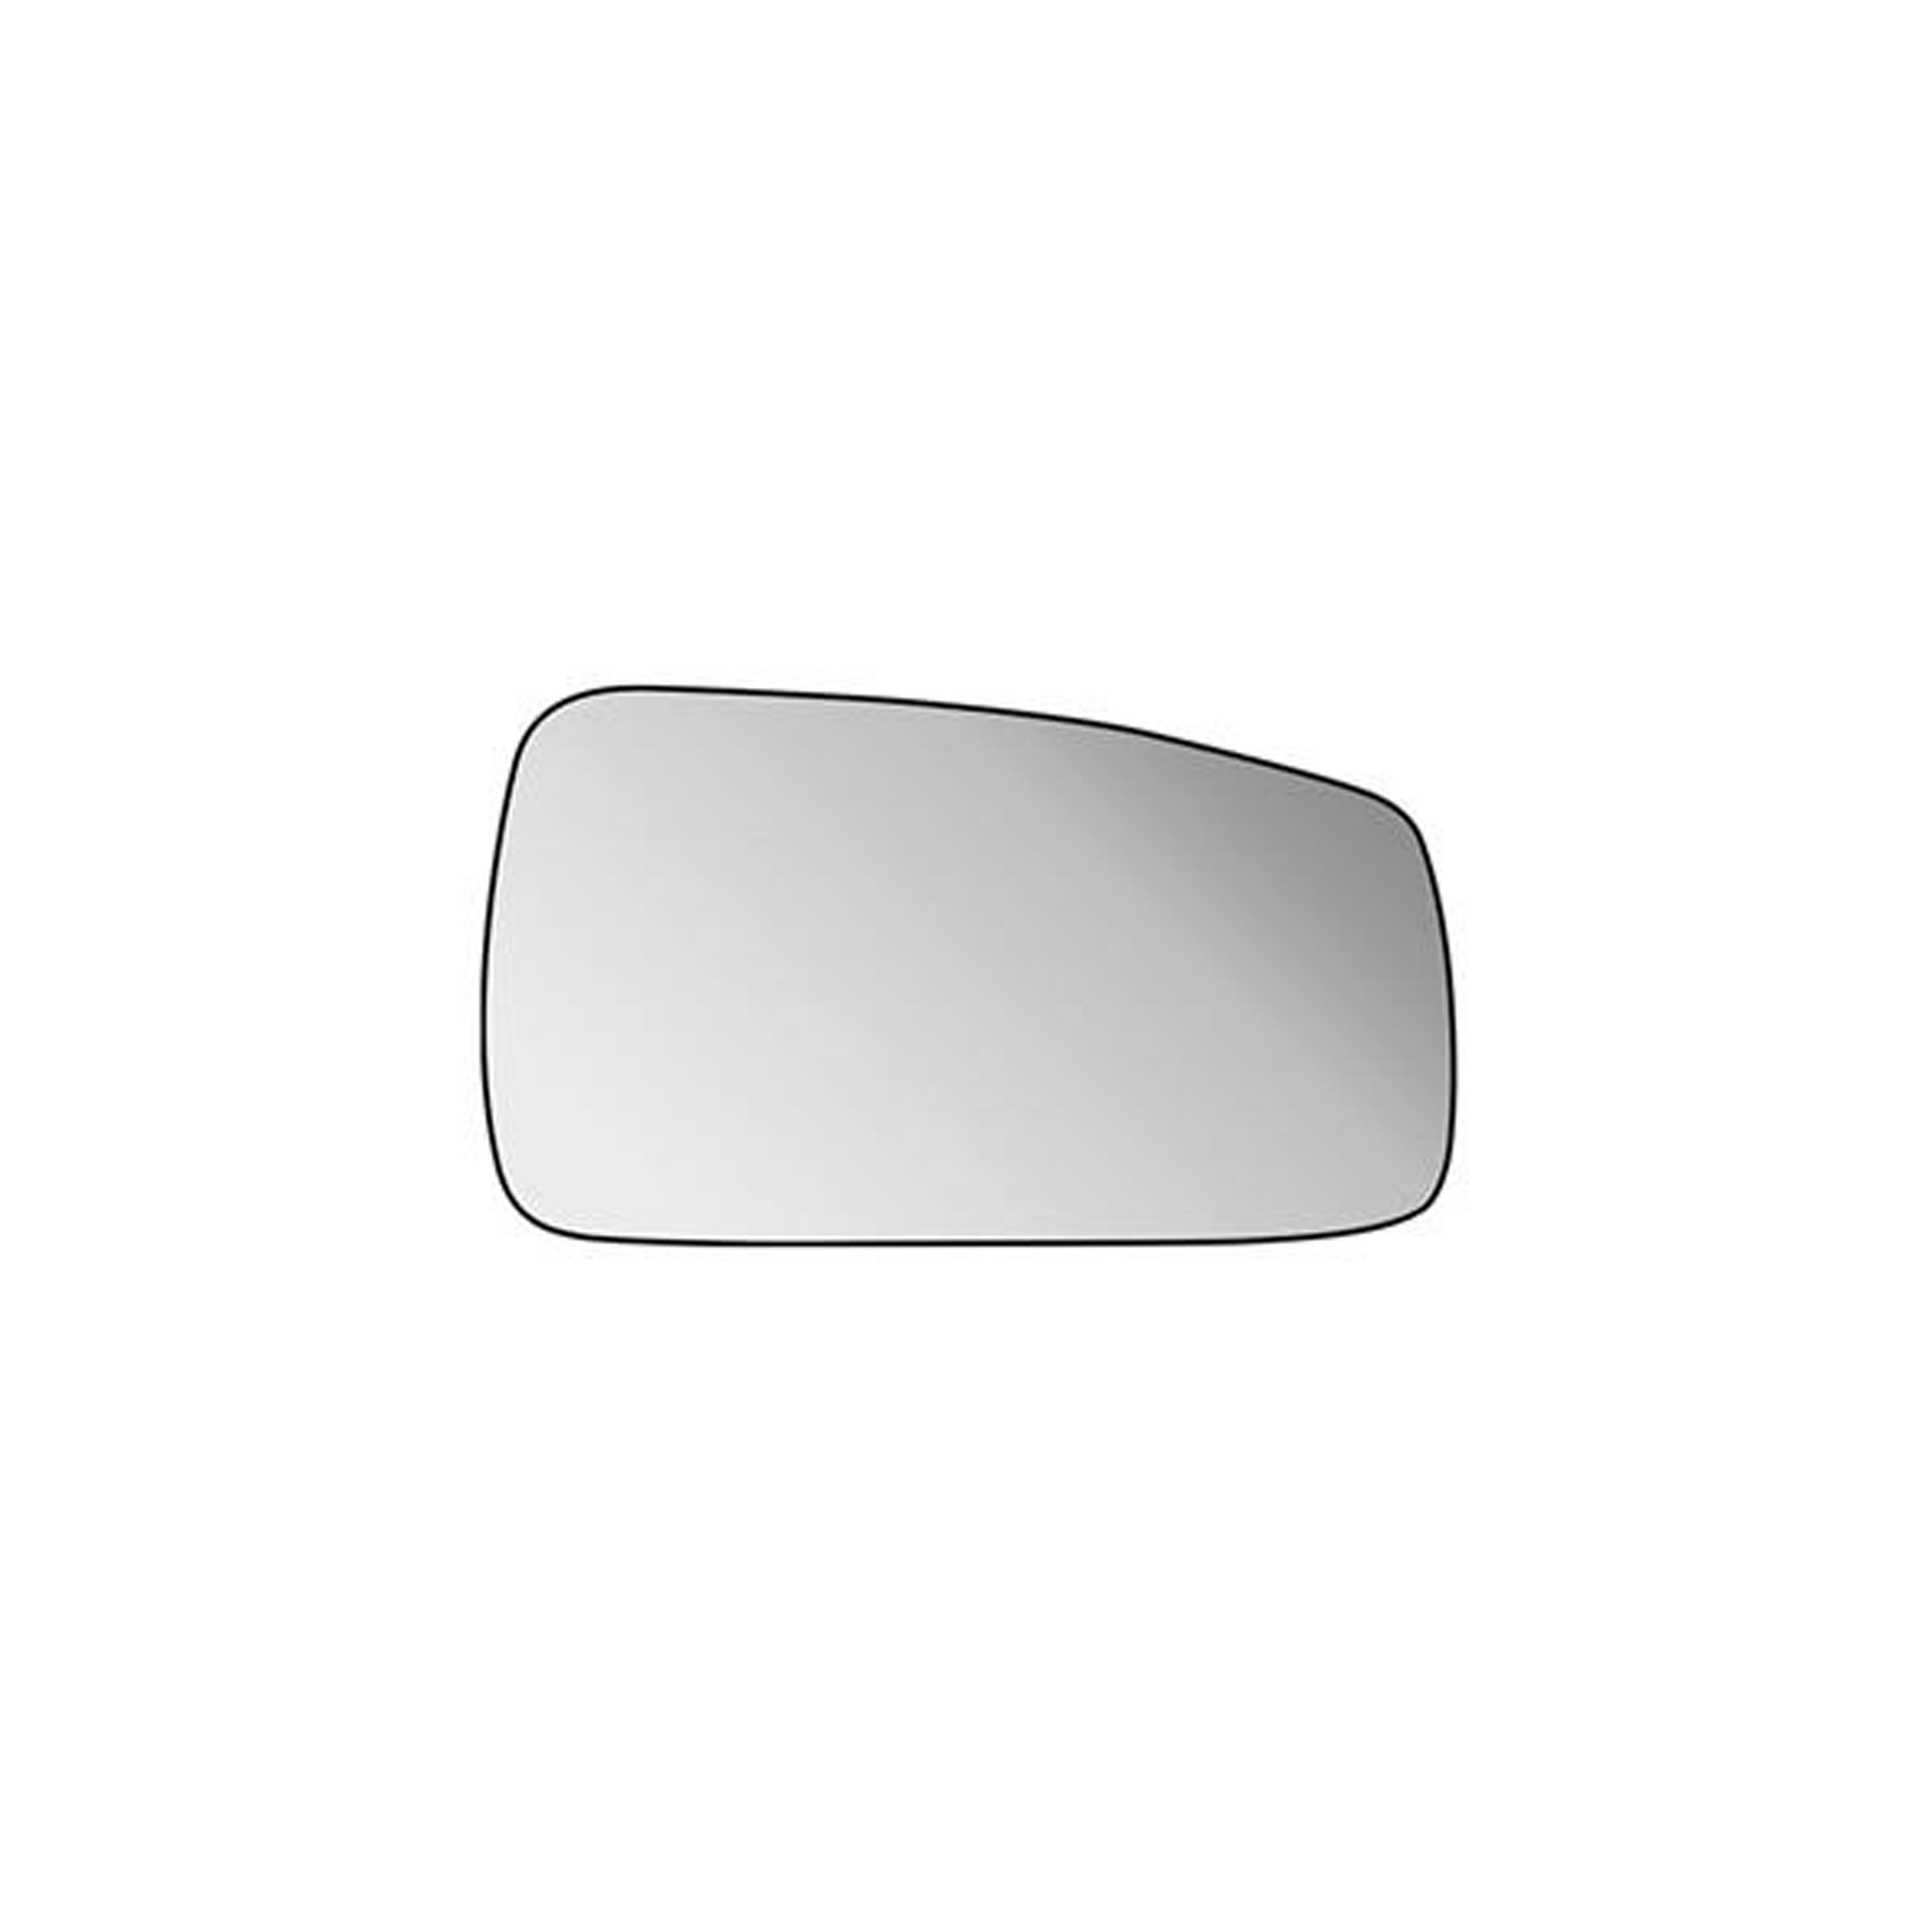 شیشه آینه جانبی راست نافذ کد 002 مناسب برای پژو پارس